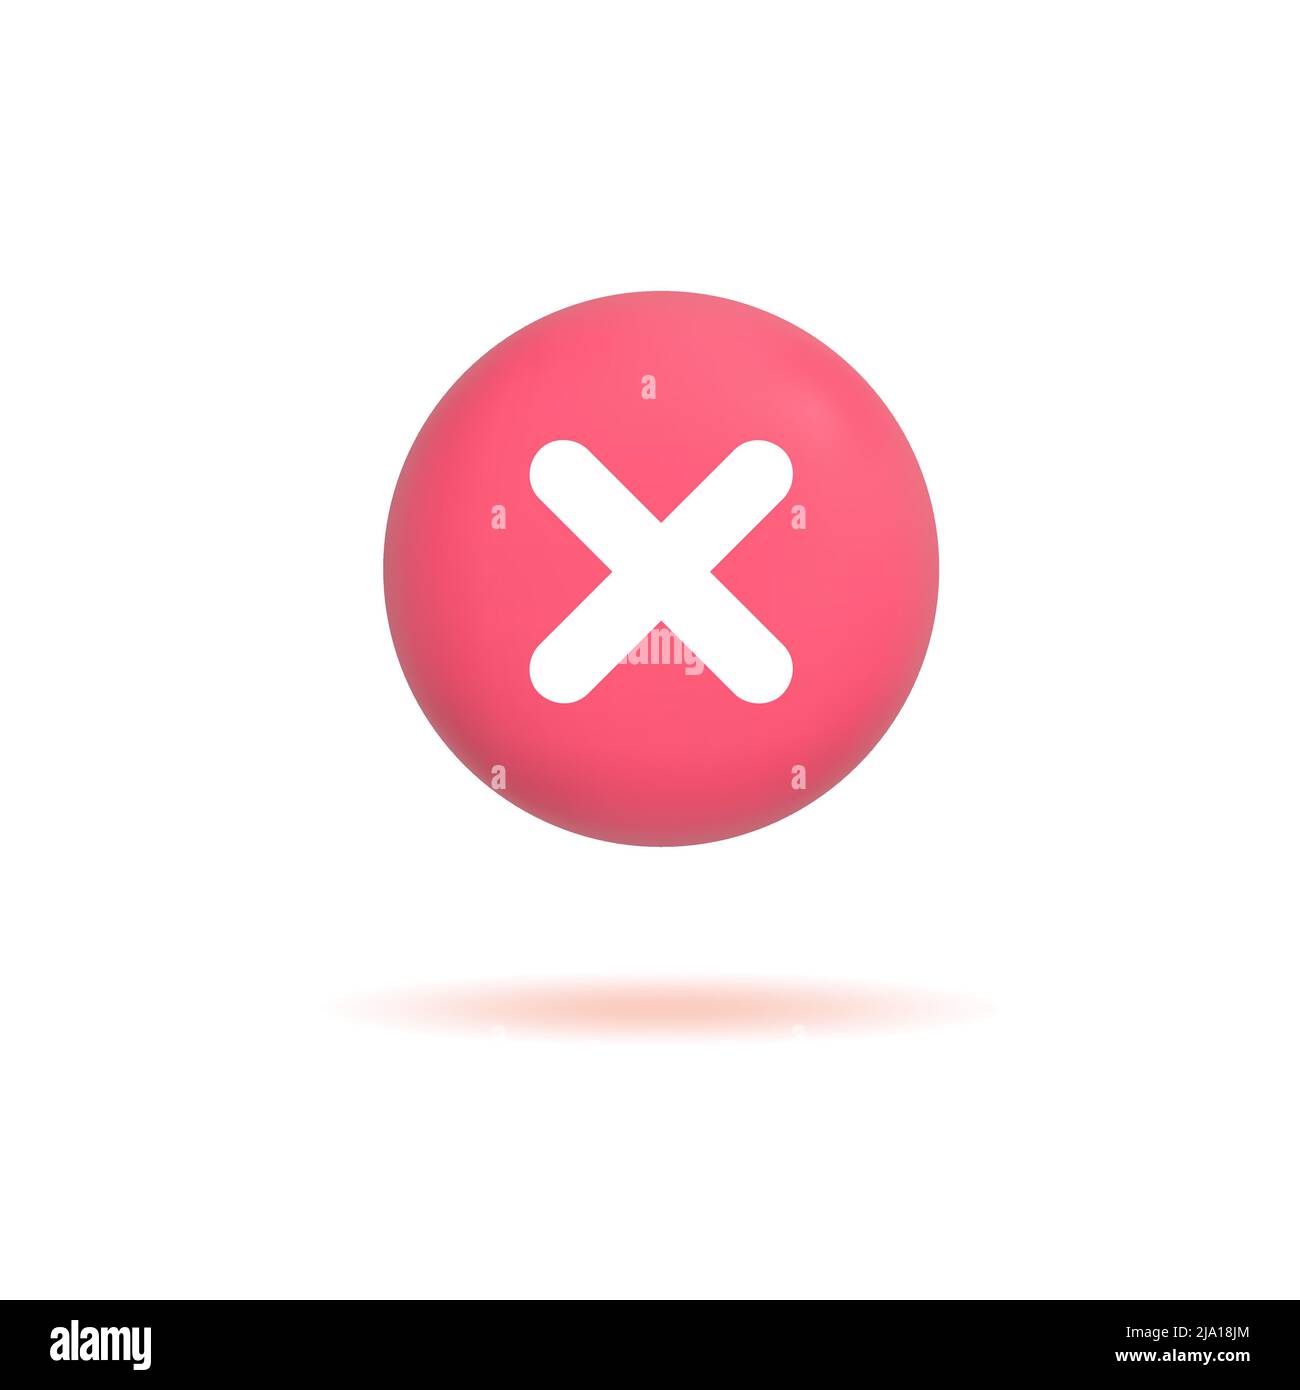 3D Kreuzmarkensymbol, Negativ- oder Ablehenzeichen, realistischer roter Kreuzknopf isoliert auf weißem Hintergrund. Vektorgrafik Stock Vektor